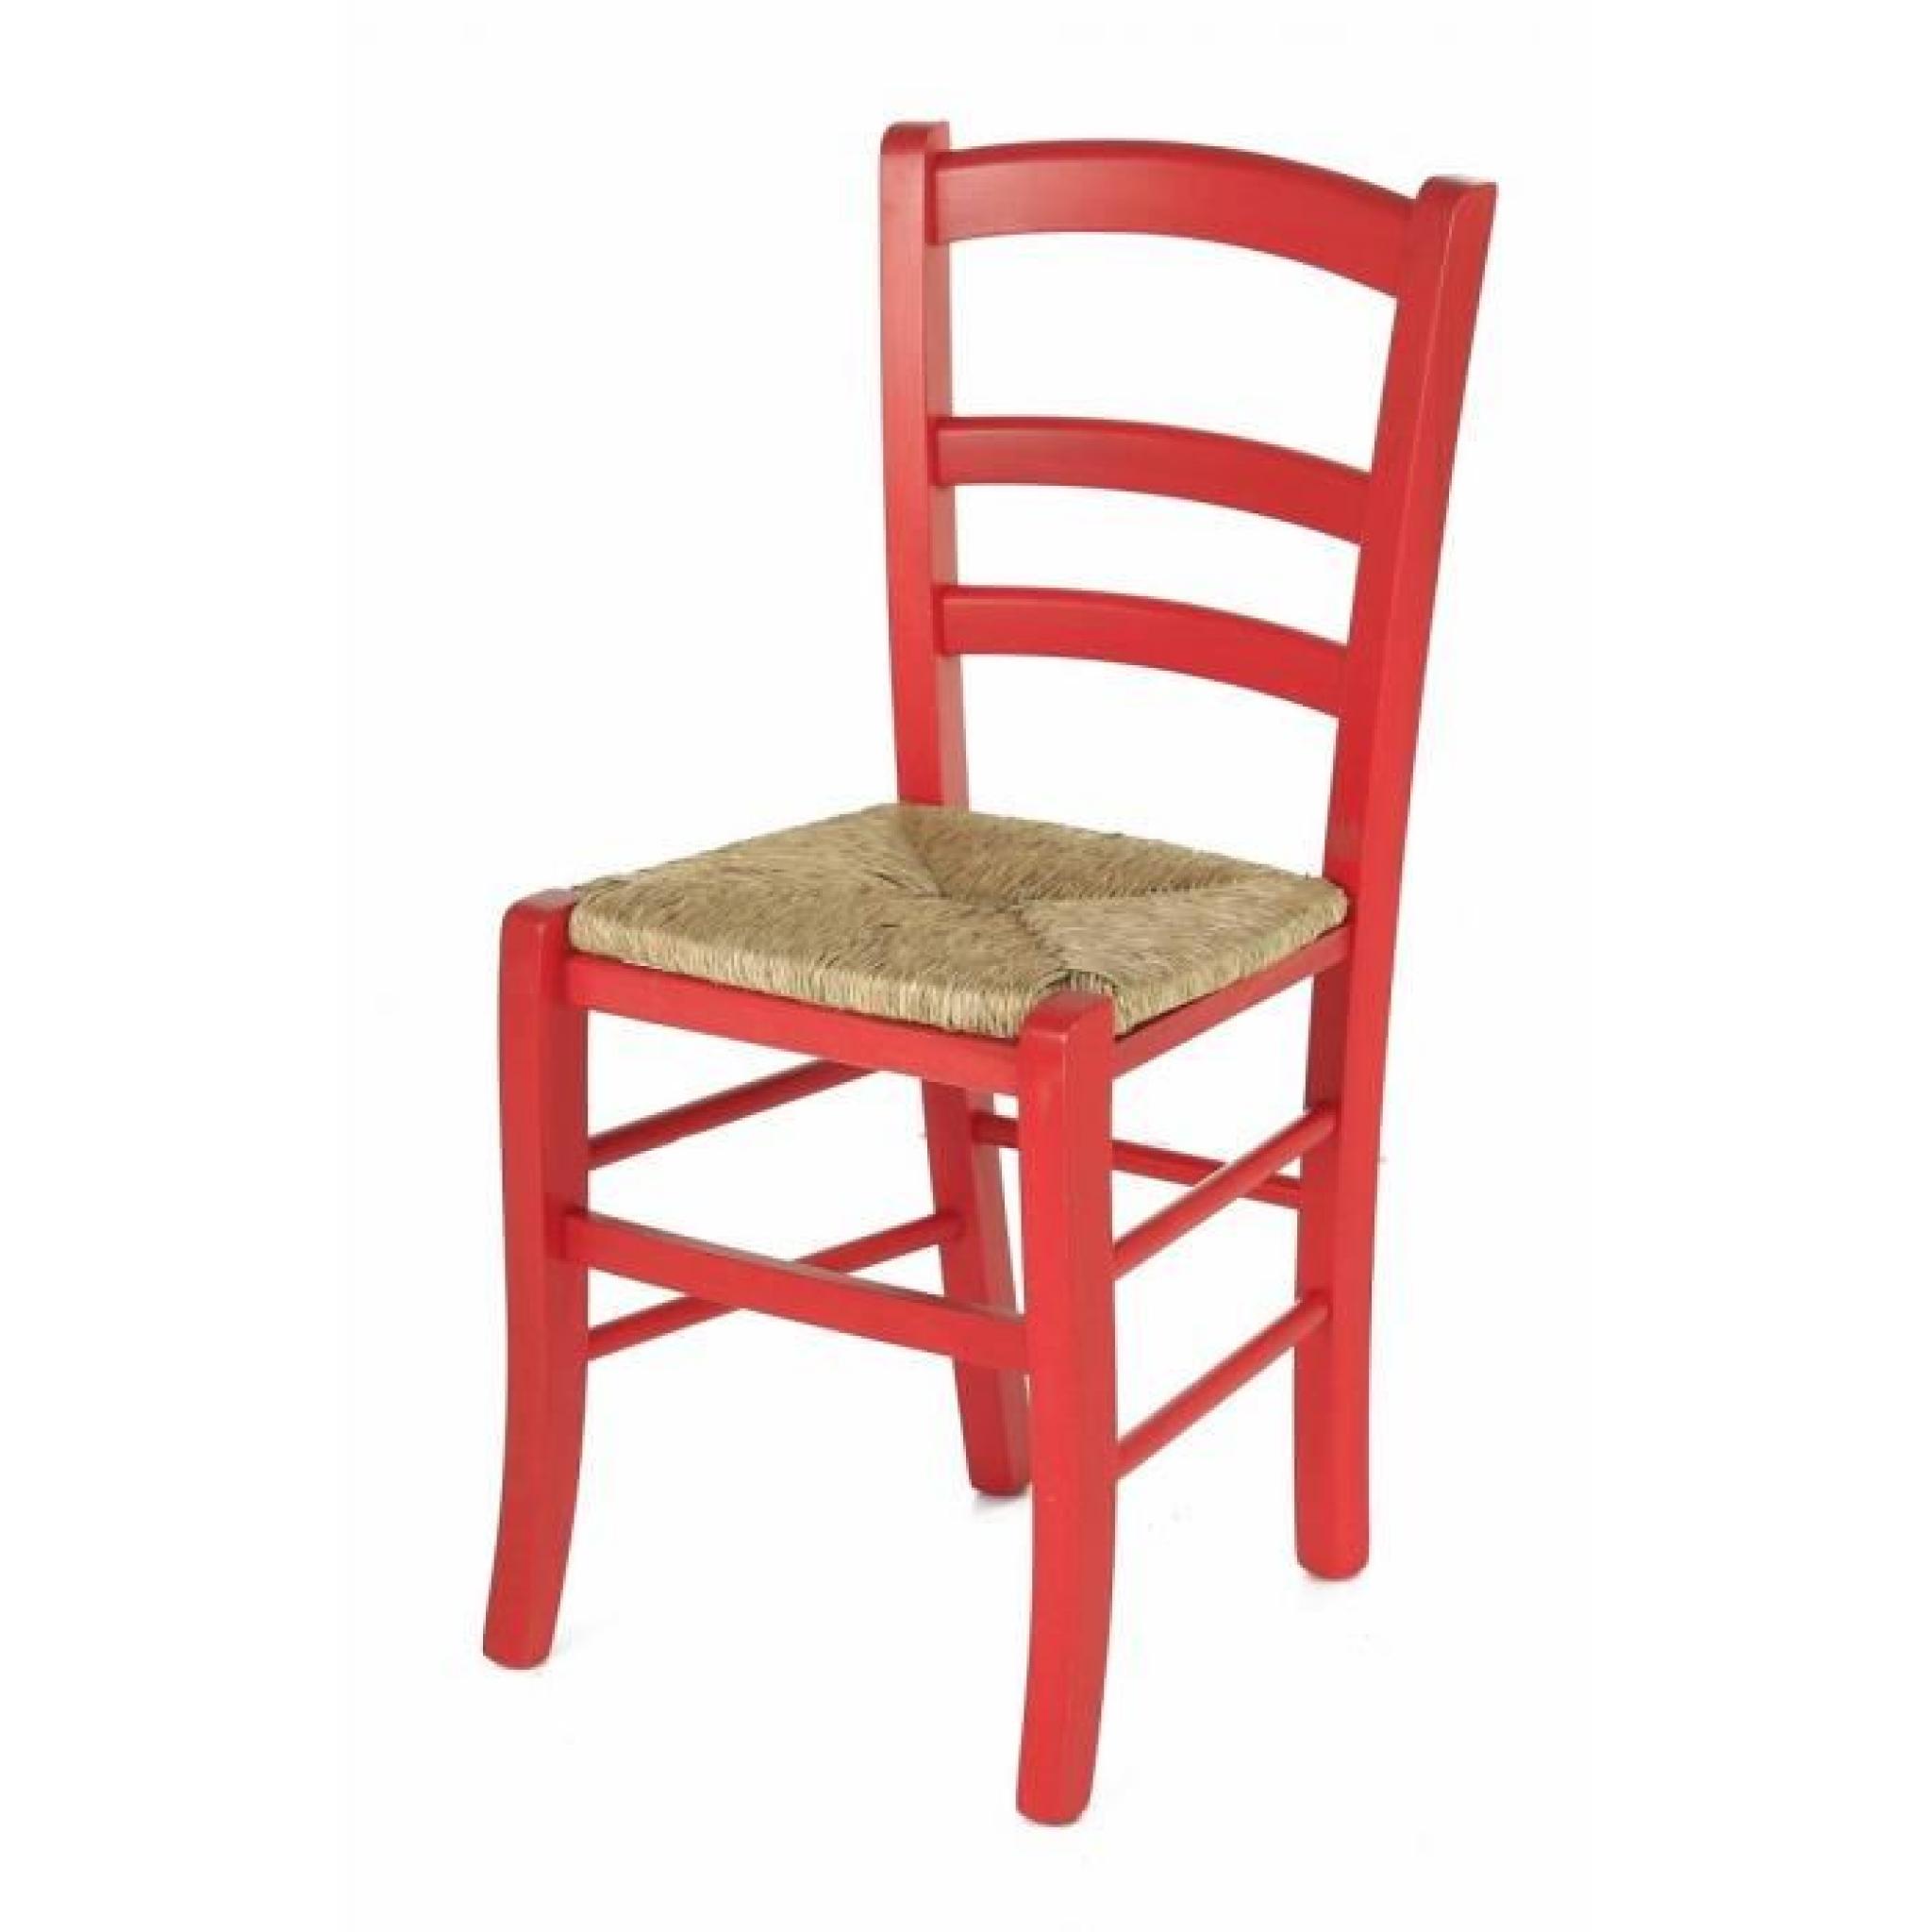 2 x Chaise hêtre massif rouge assise paille Sillingy - Pays pas cher